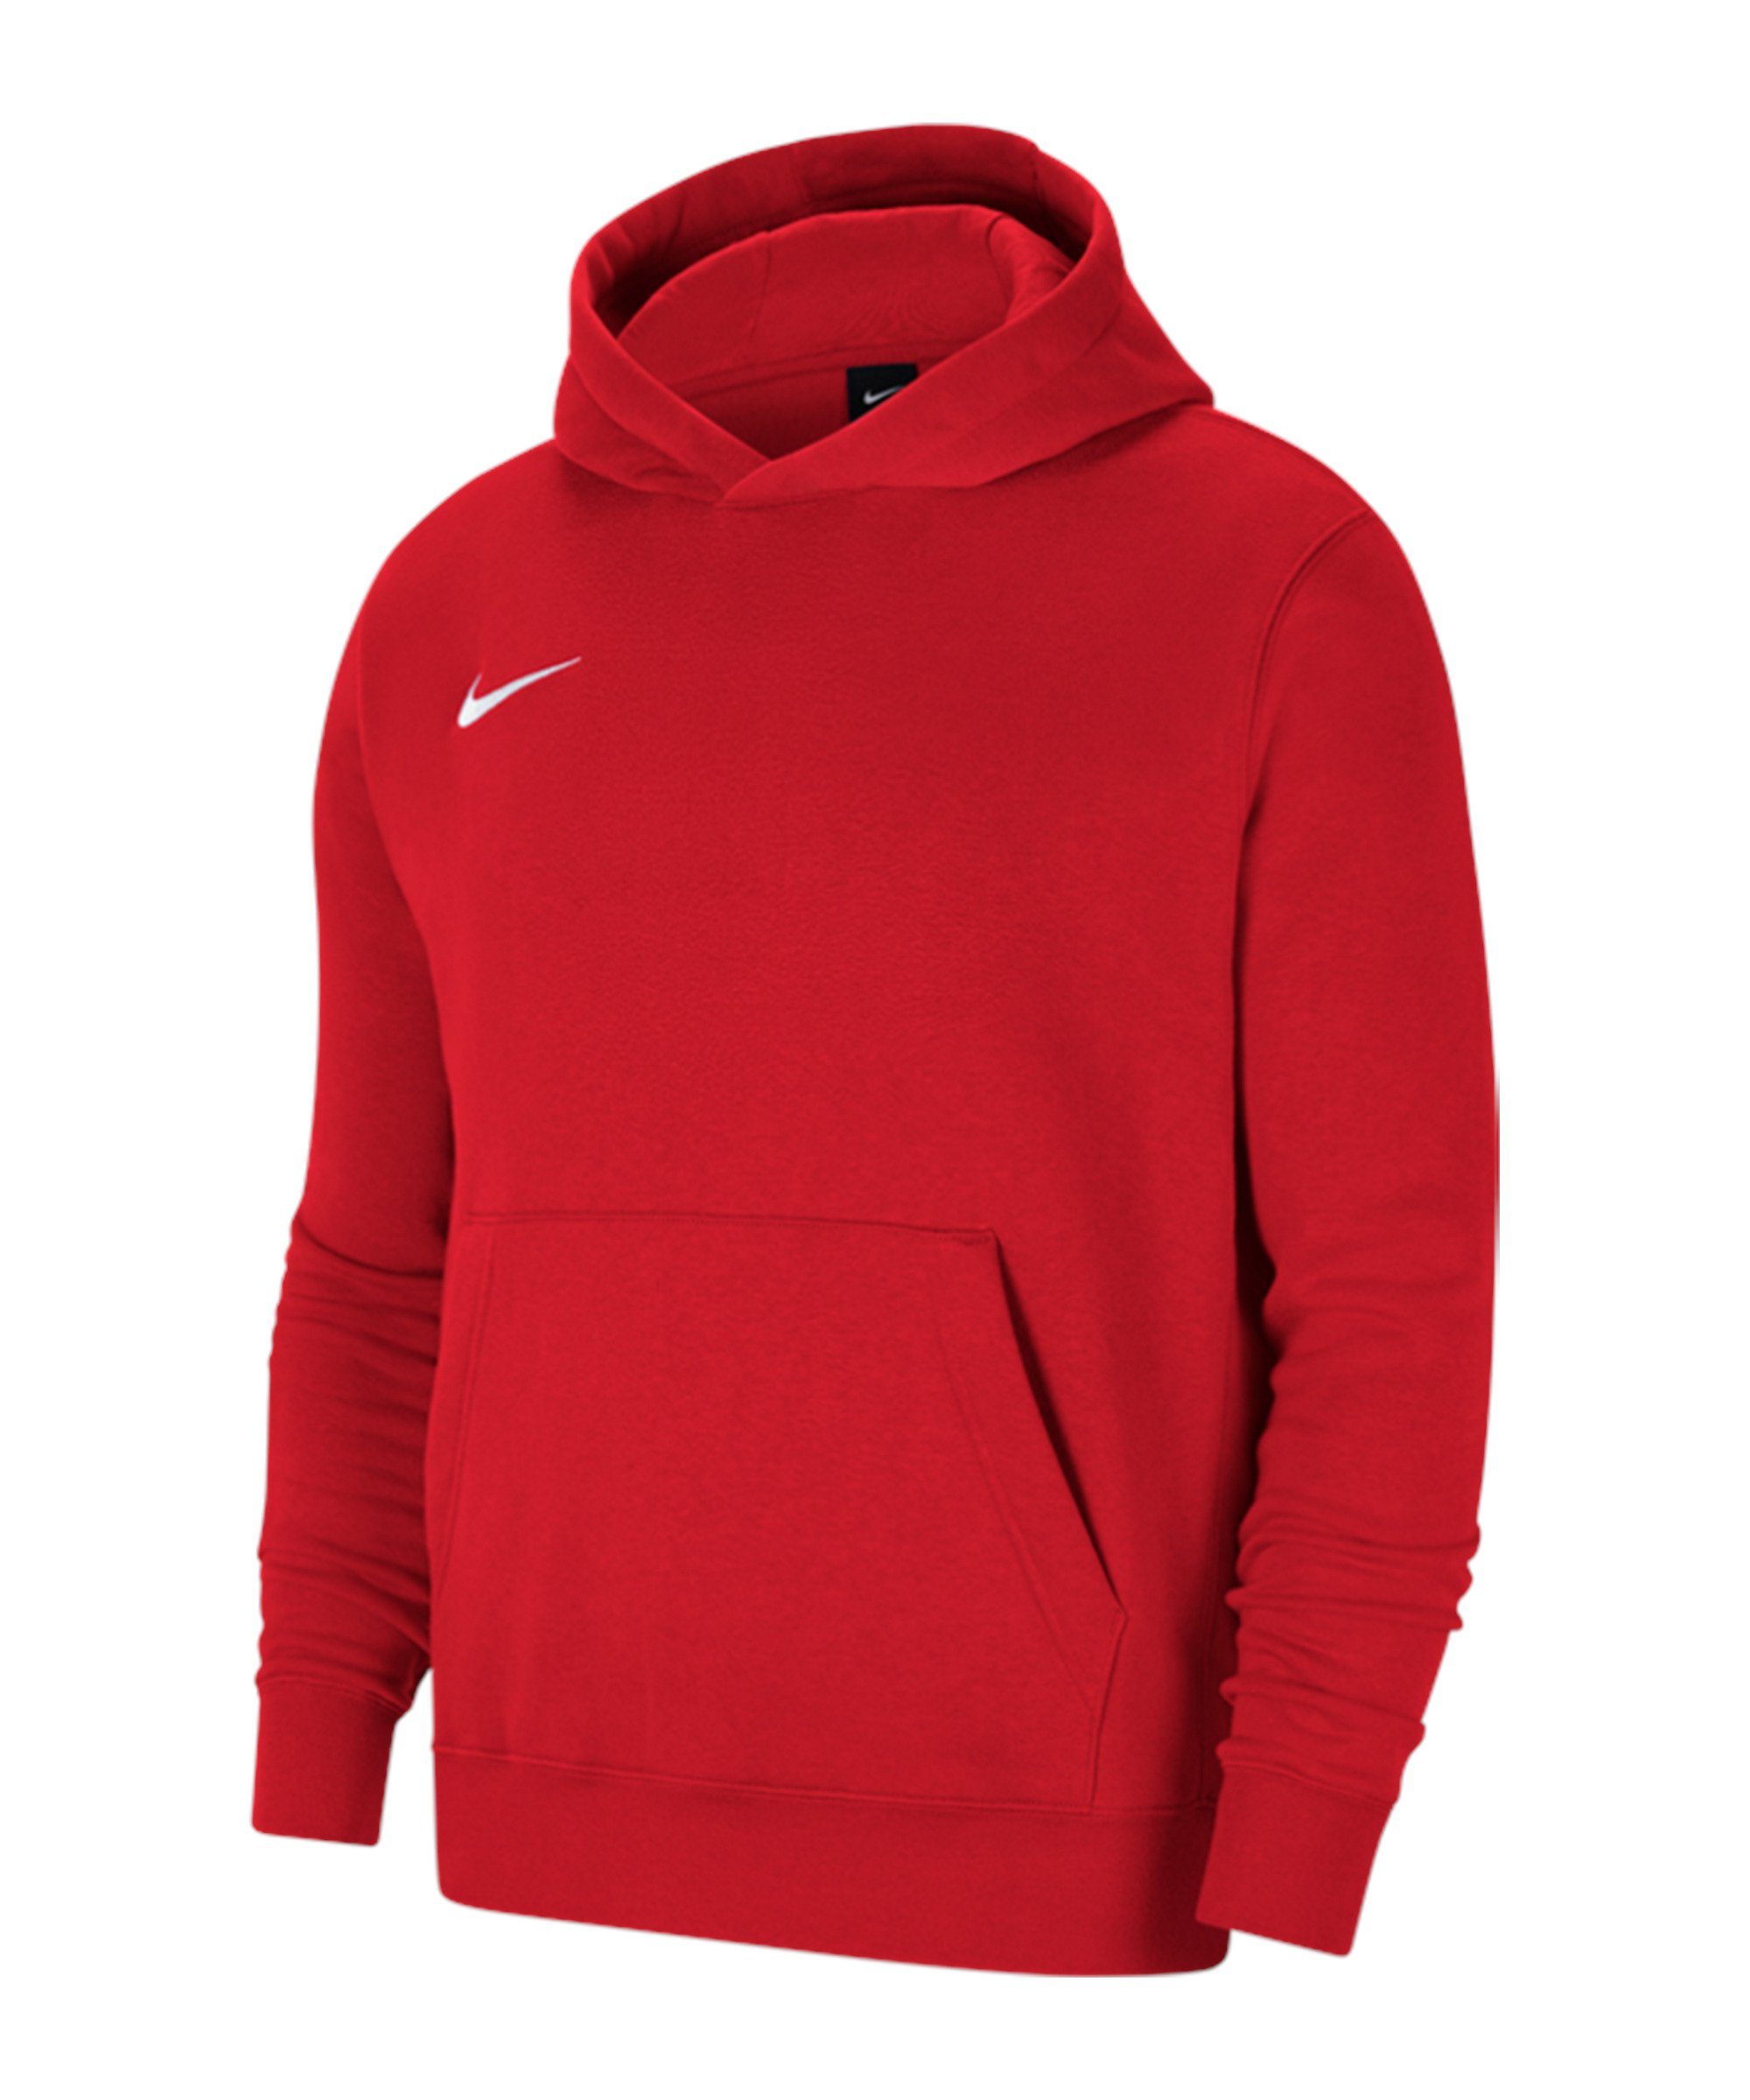 Rote Nike Hoodies für Damen online kaufen | OTTO